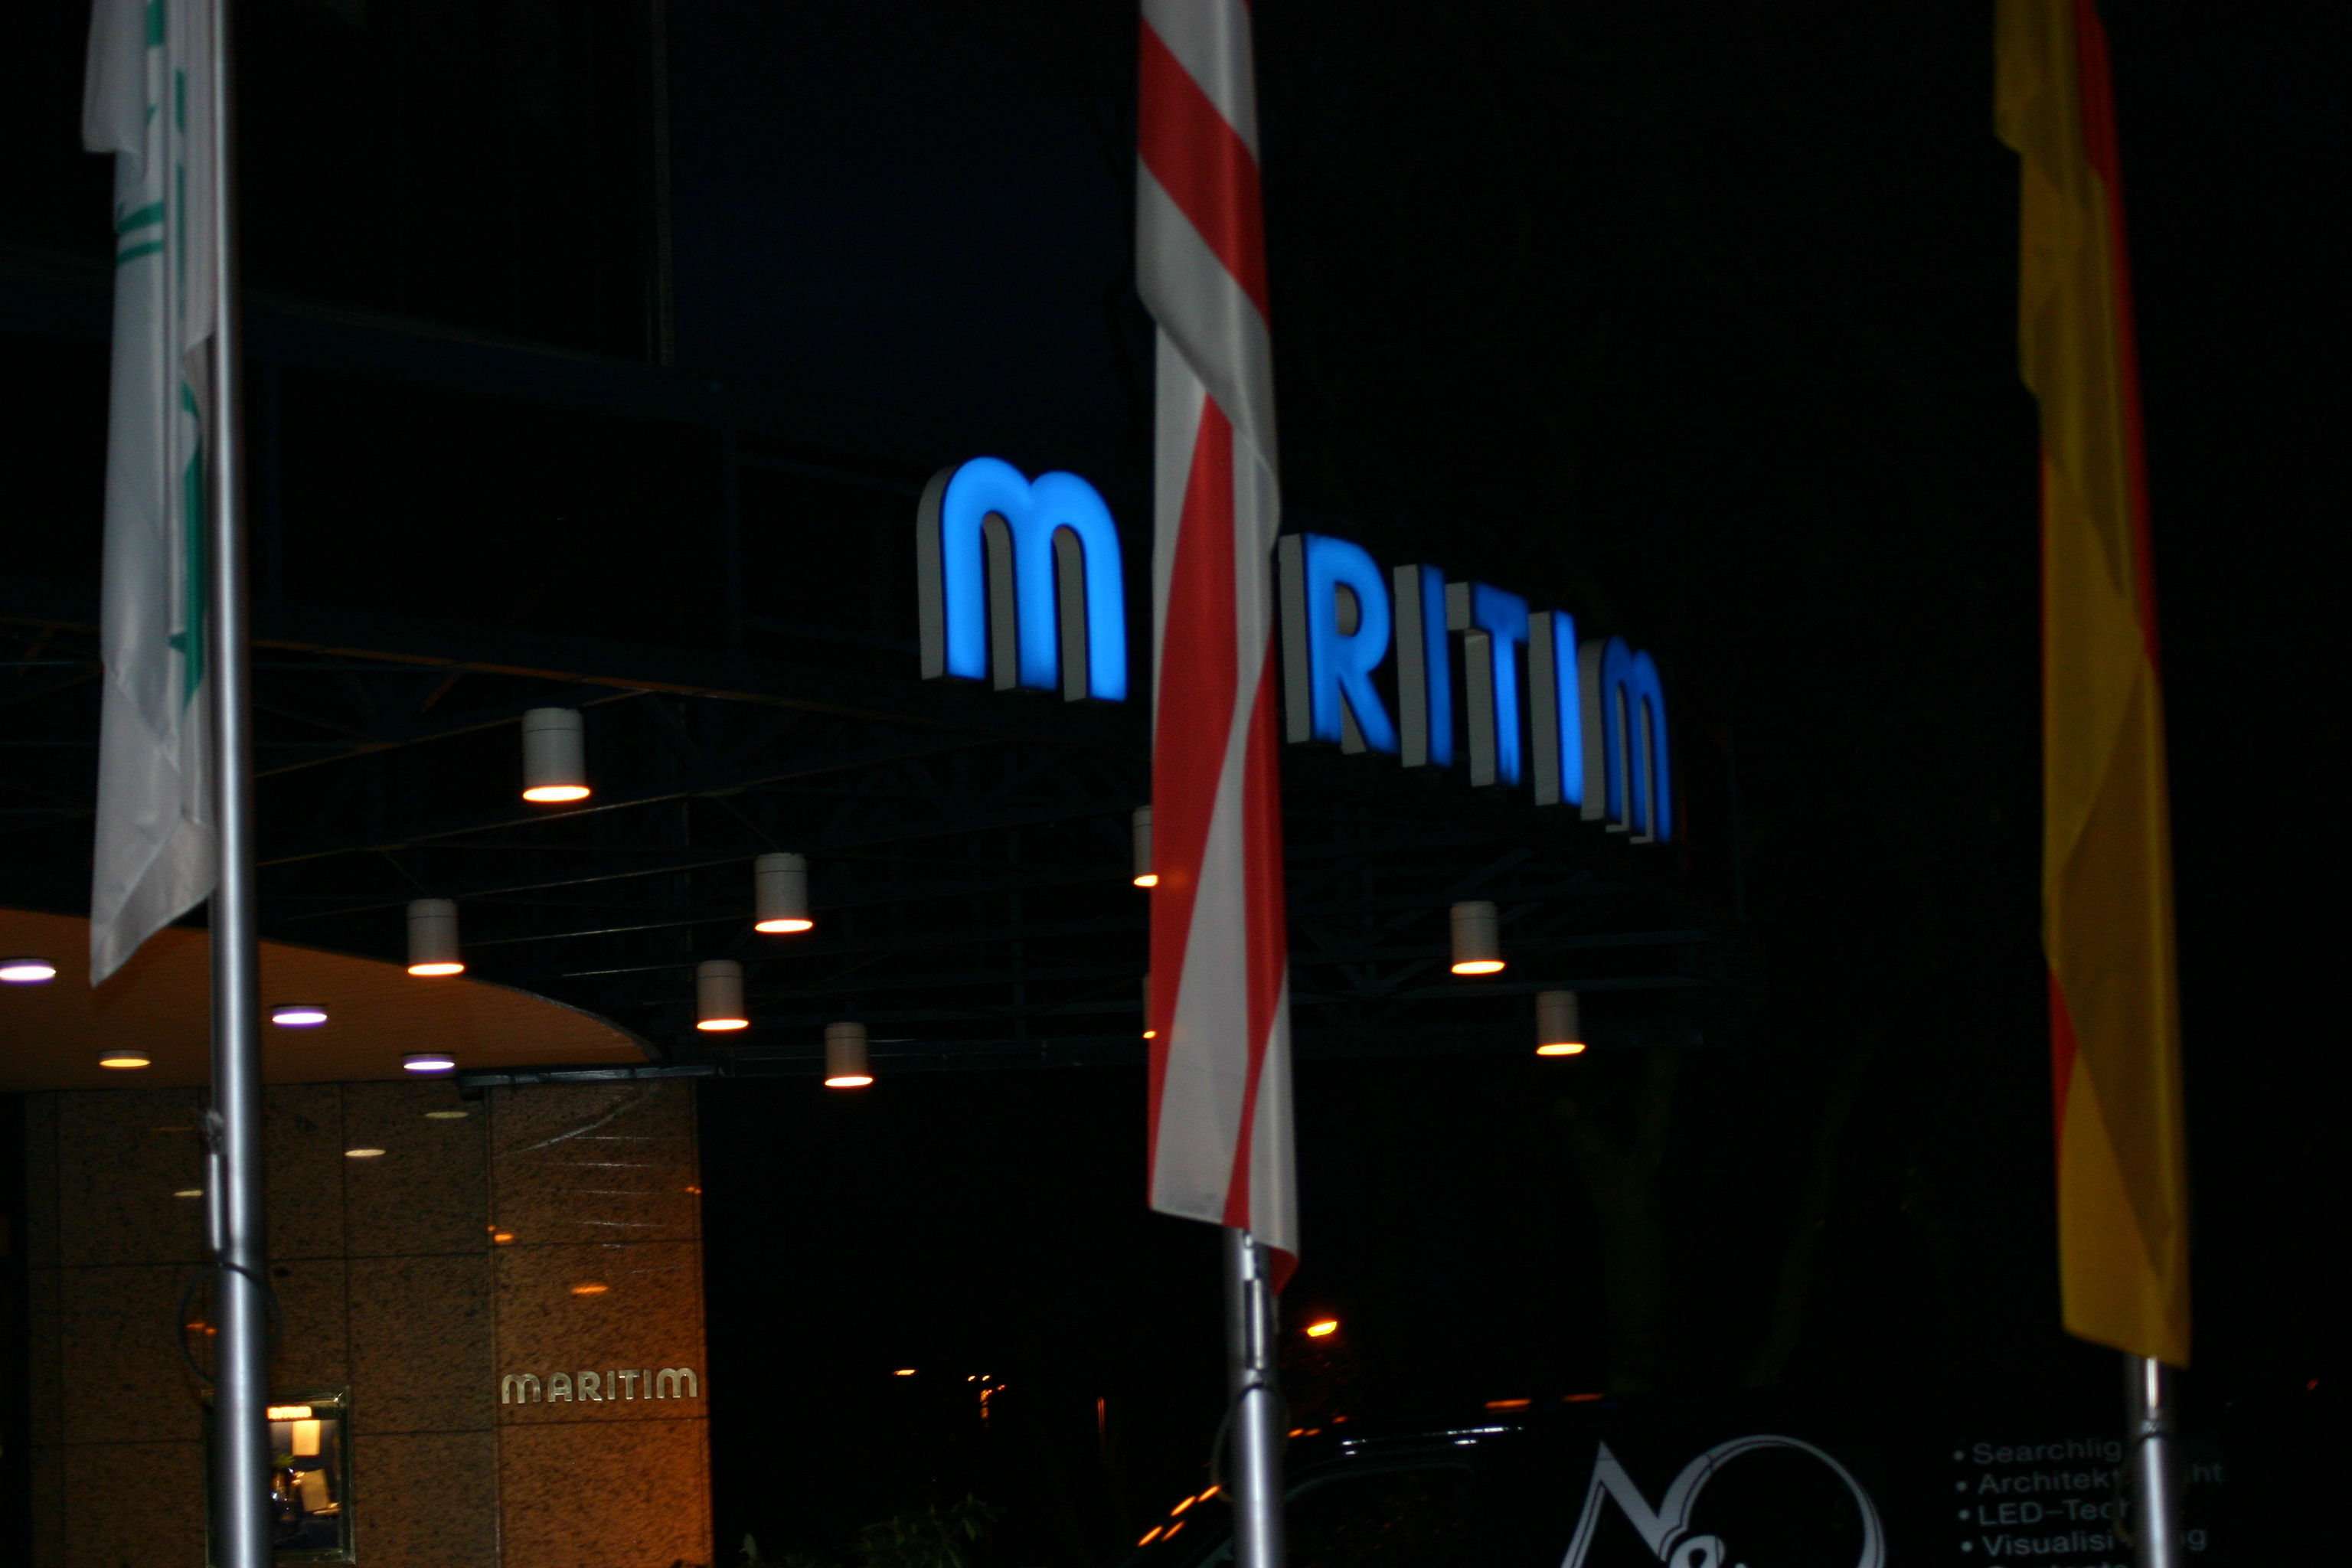 Maritim Hotel Bremen
bei Nacht